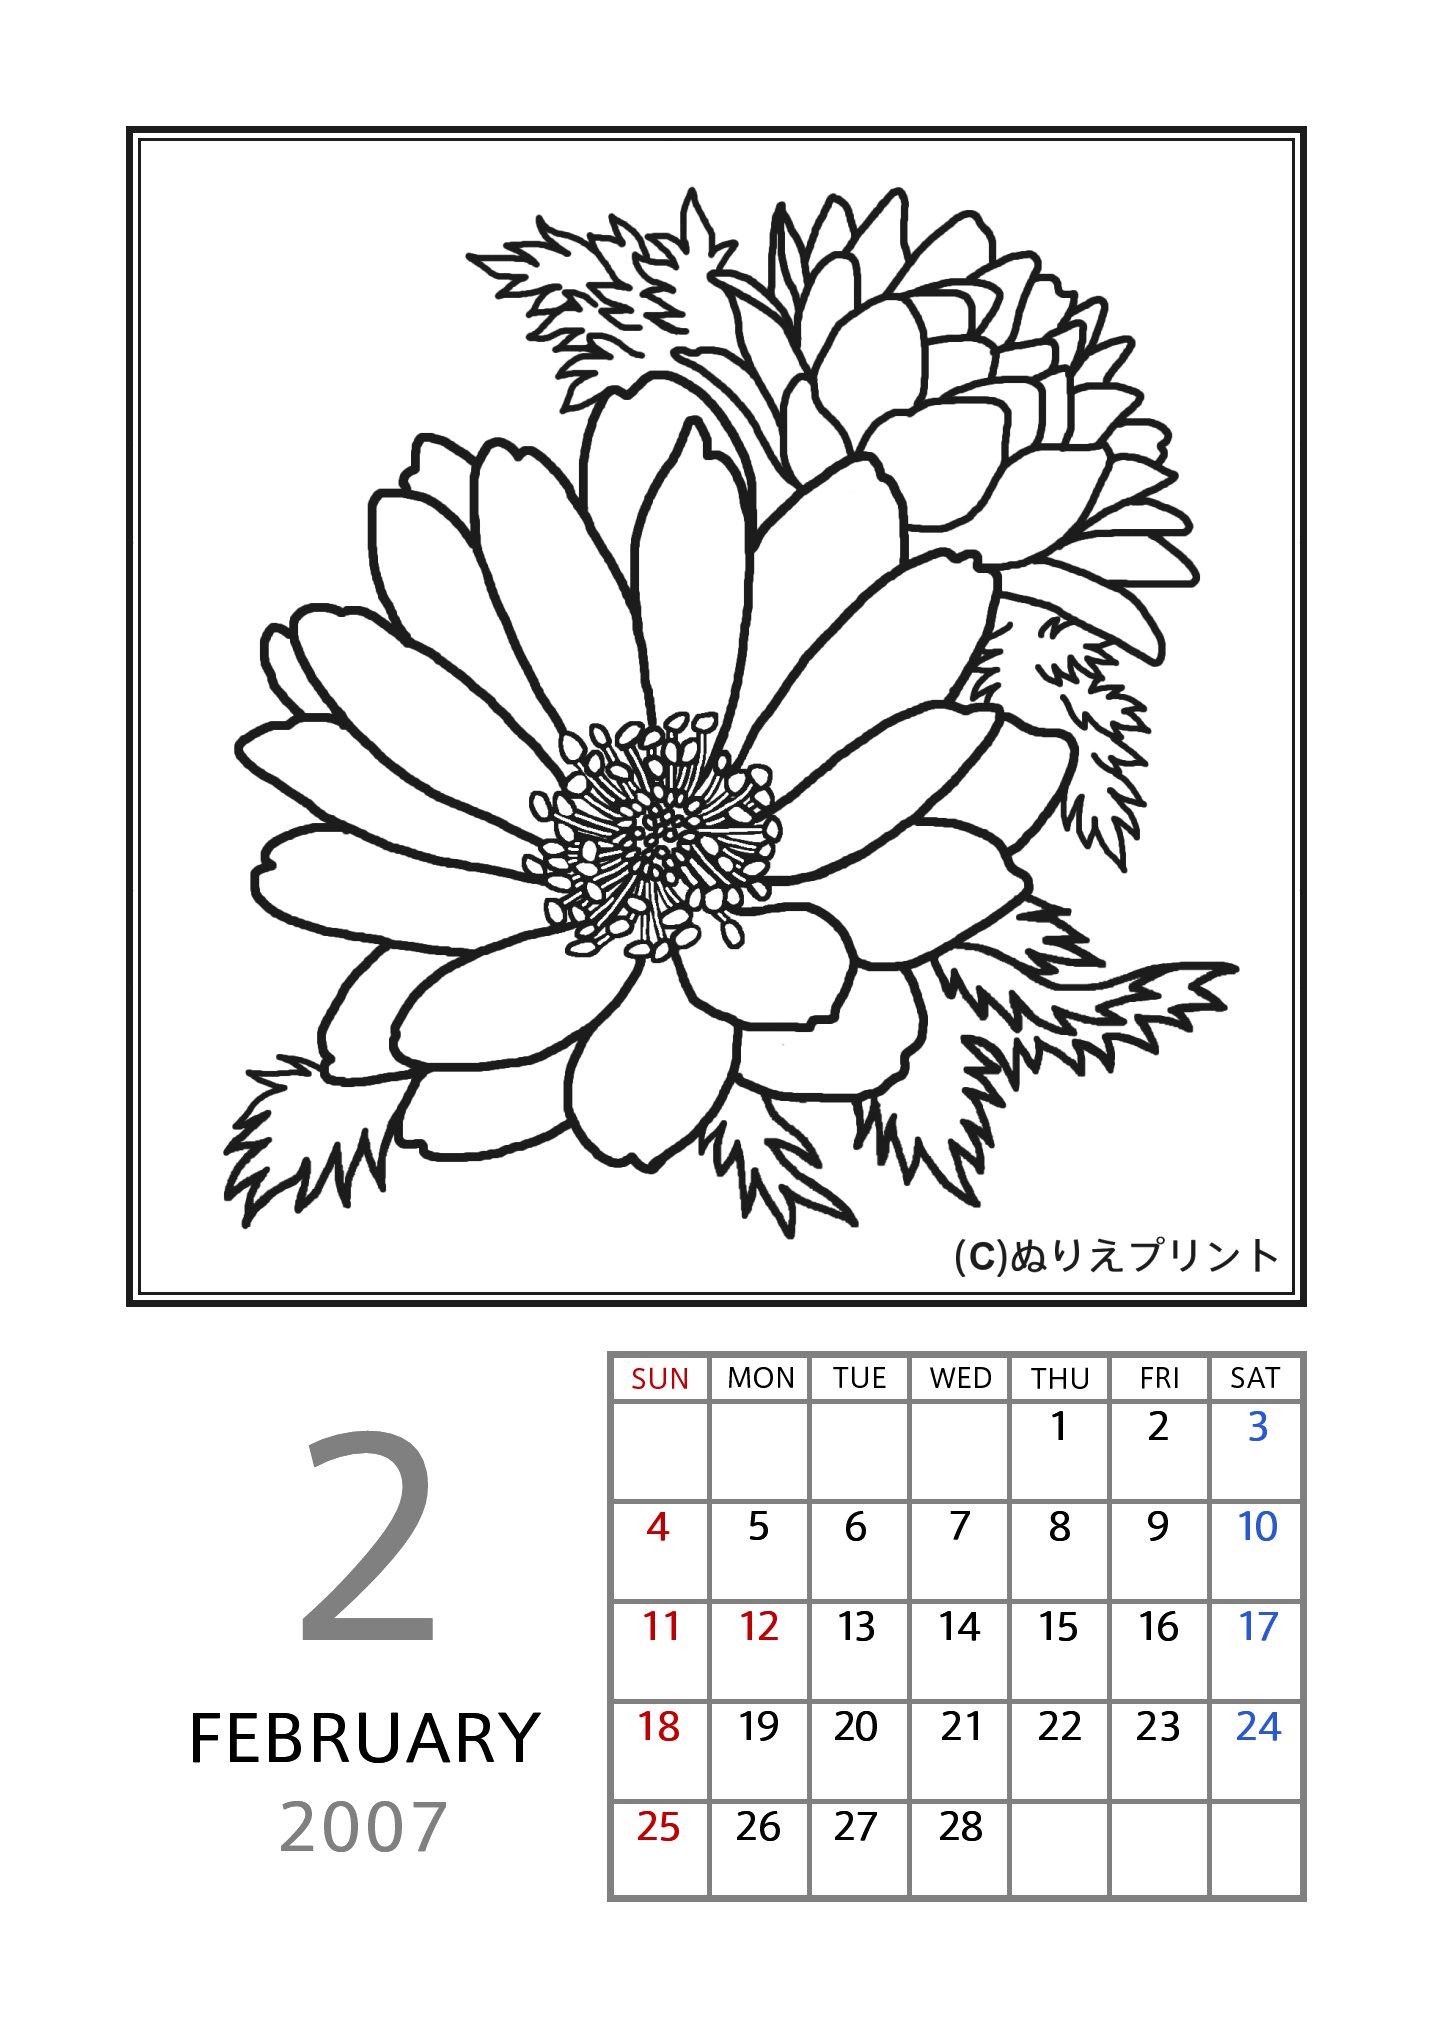 無料の塗り絵 花のぬりえカレンダー07 平成19年 2月 フクジュソウ 福寿草 ぬりえイラスト